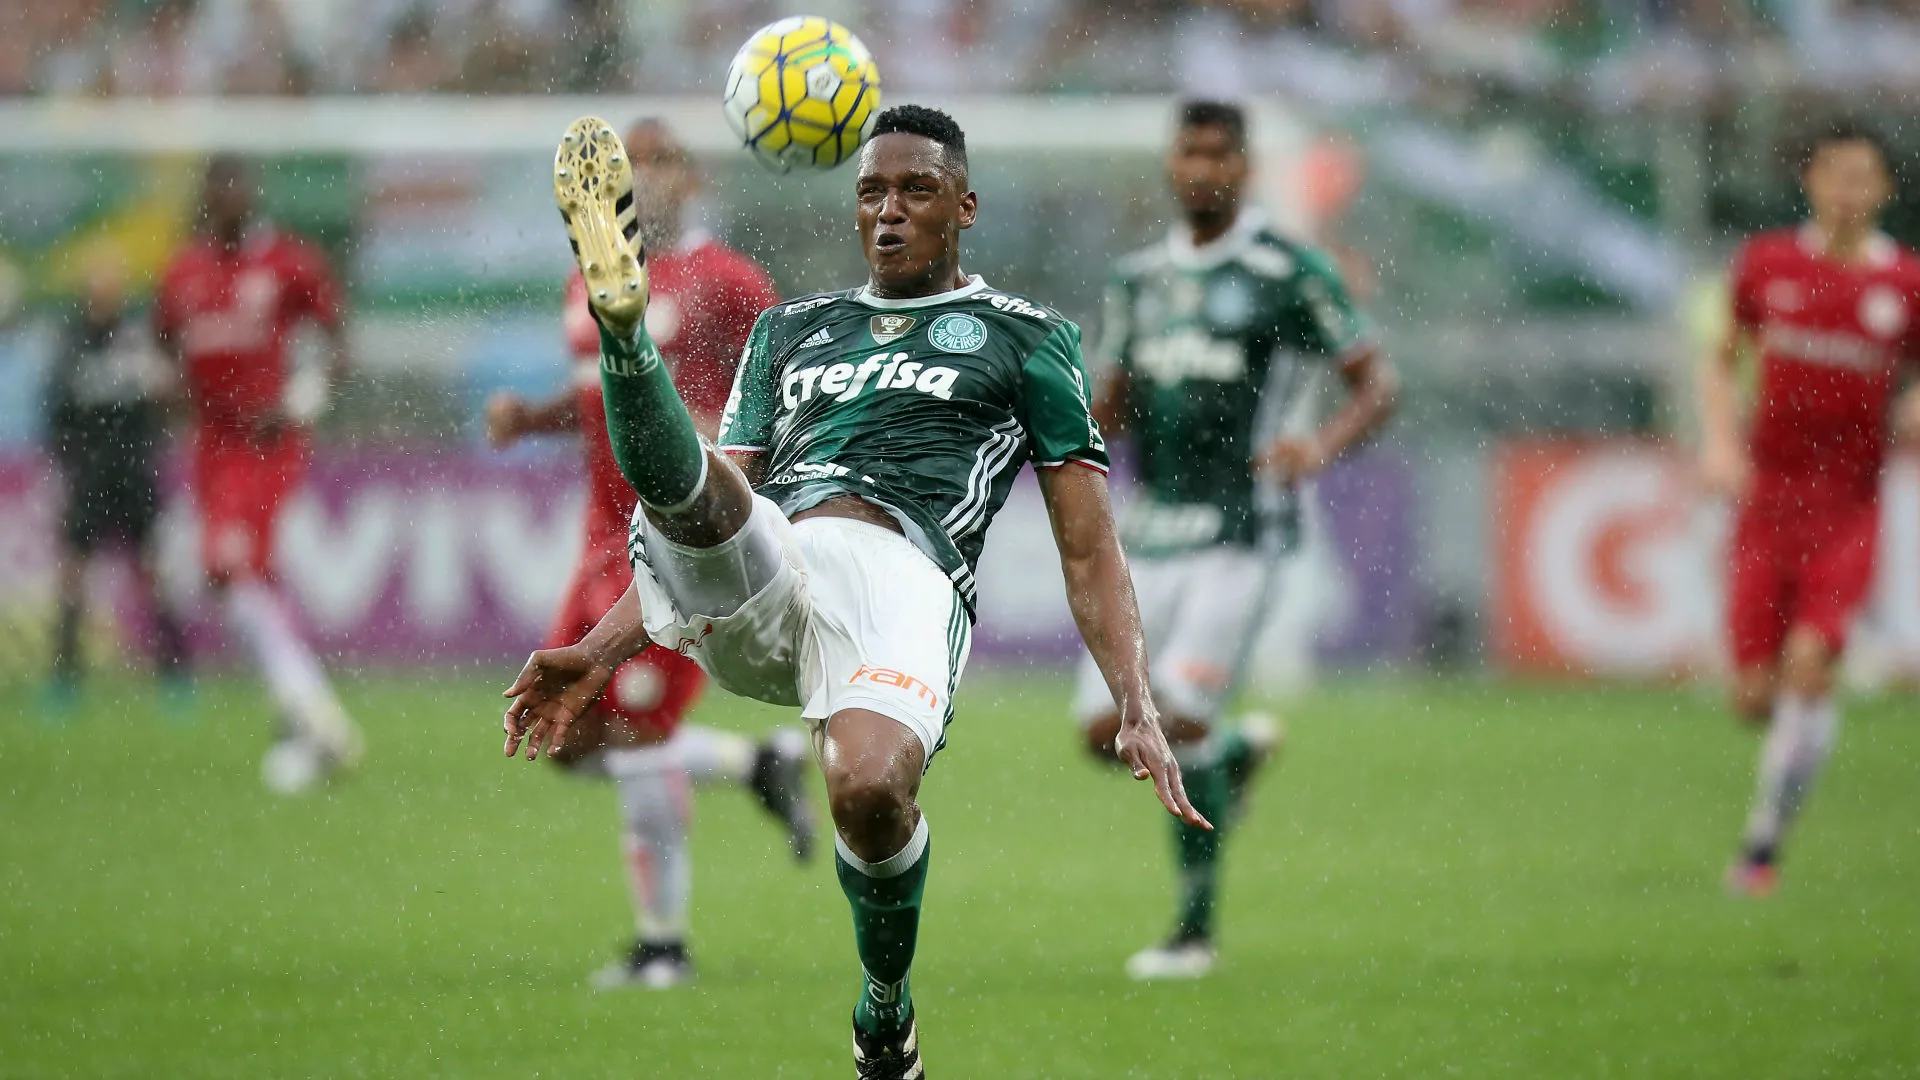 [VerdãoWeb] - Palmeiras oficializa venda de Yerry Mina - Por Lucas Salzer